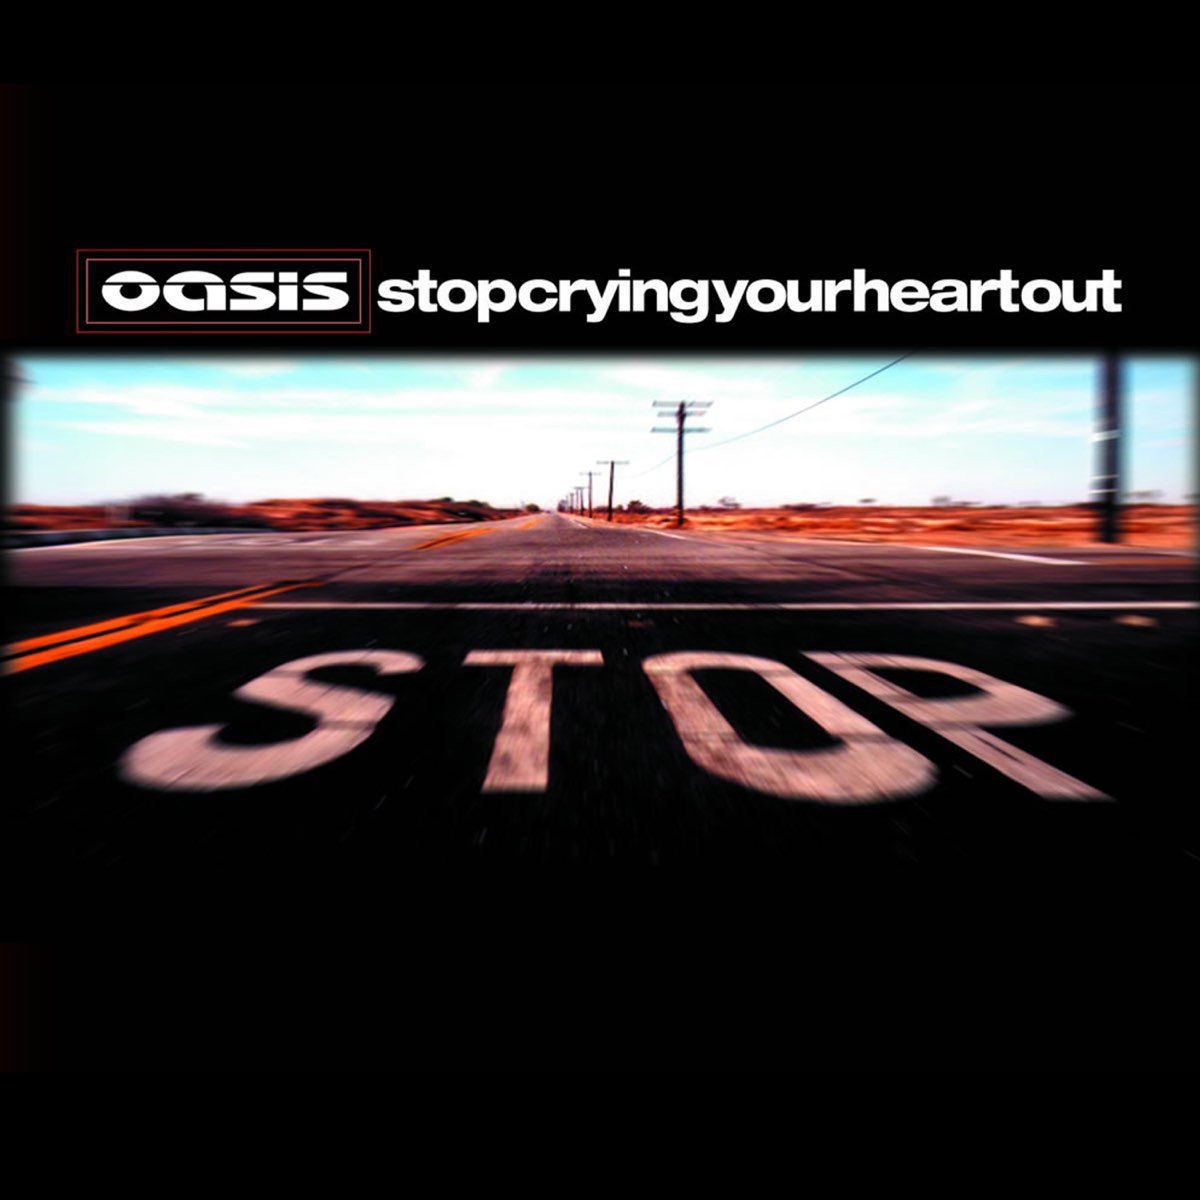 แปลเพลง : Oasis - Stop Crying Your Heart Out บทเพลงปลอบจิตใจและคราบน้ำตา